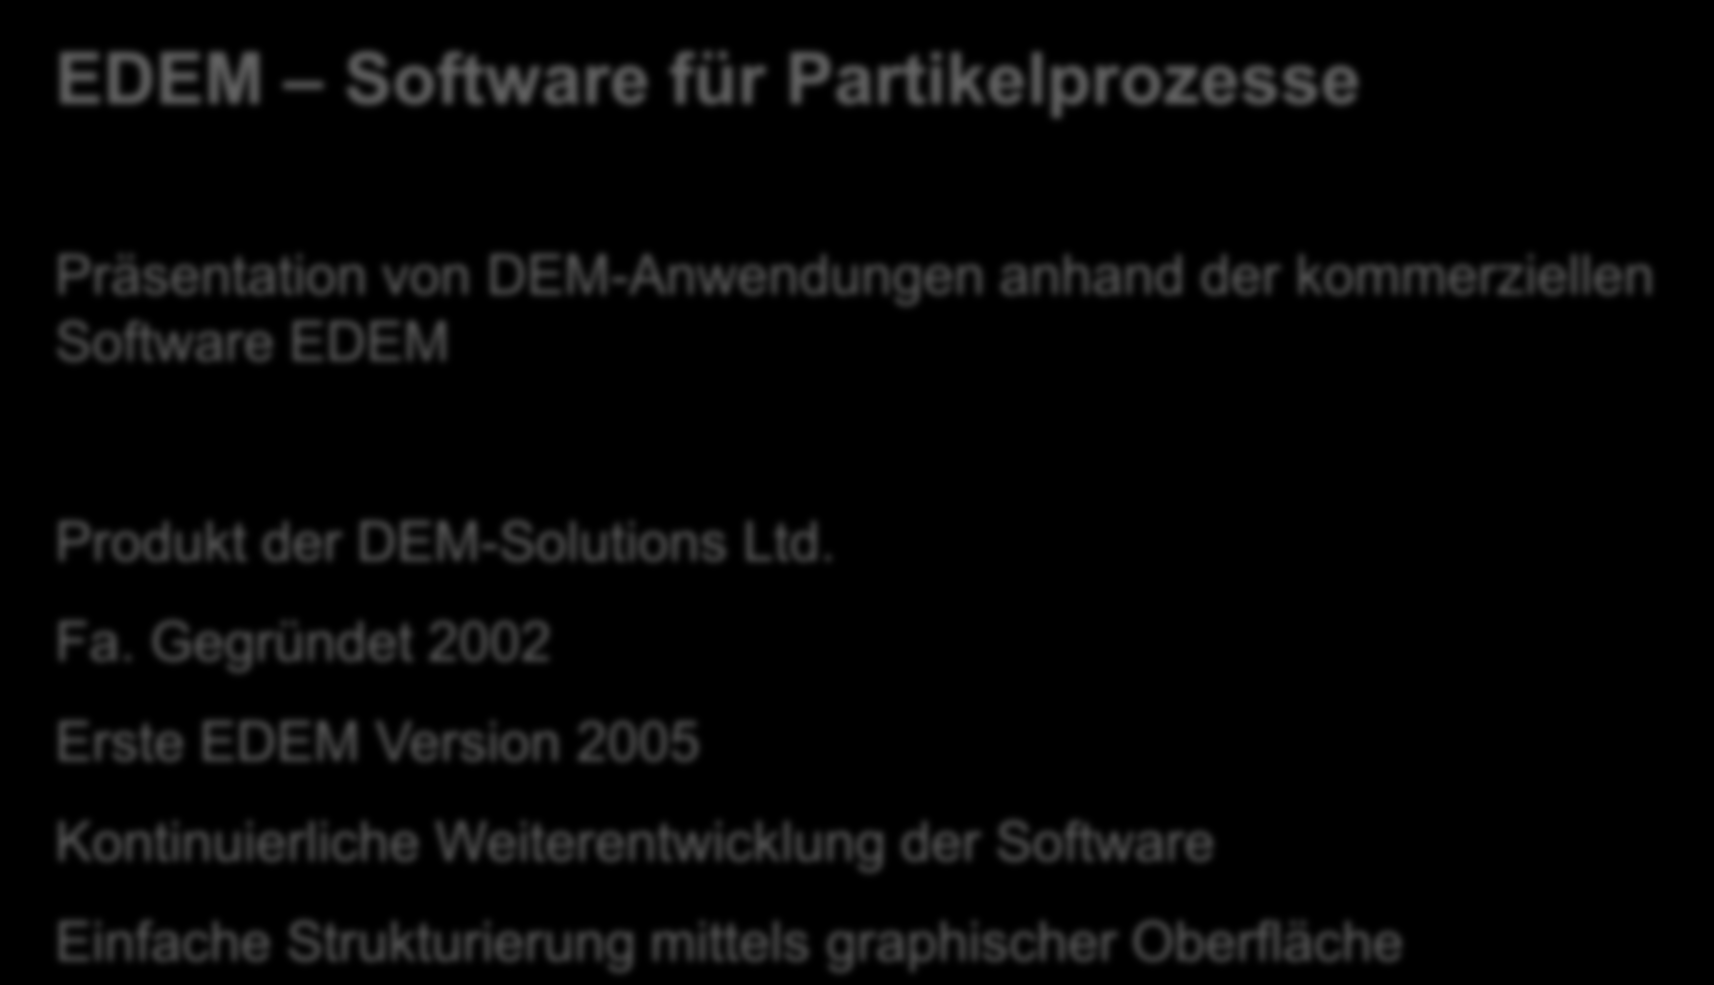 Simulation Software EDEM Software für Partikelprozesse Präsentation von DEM-Anwendungen anhand der kommerziellen Software EDEM Produkt der DEM-Solutions